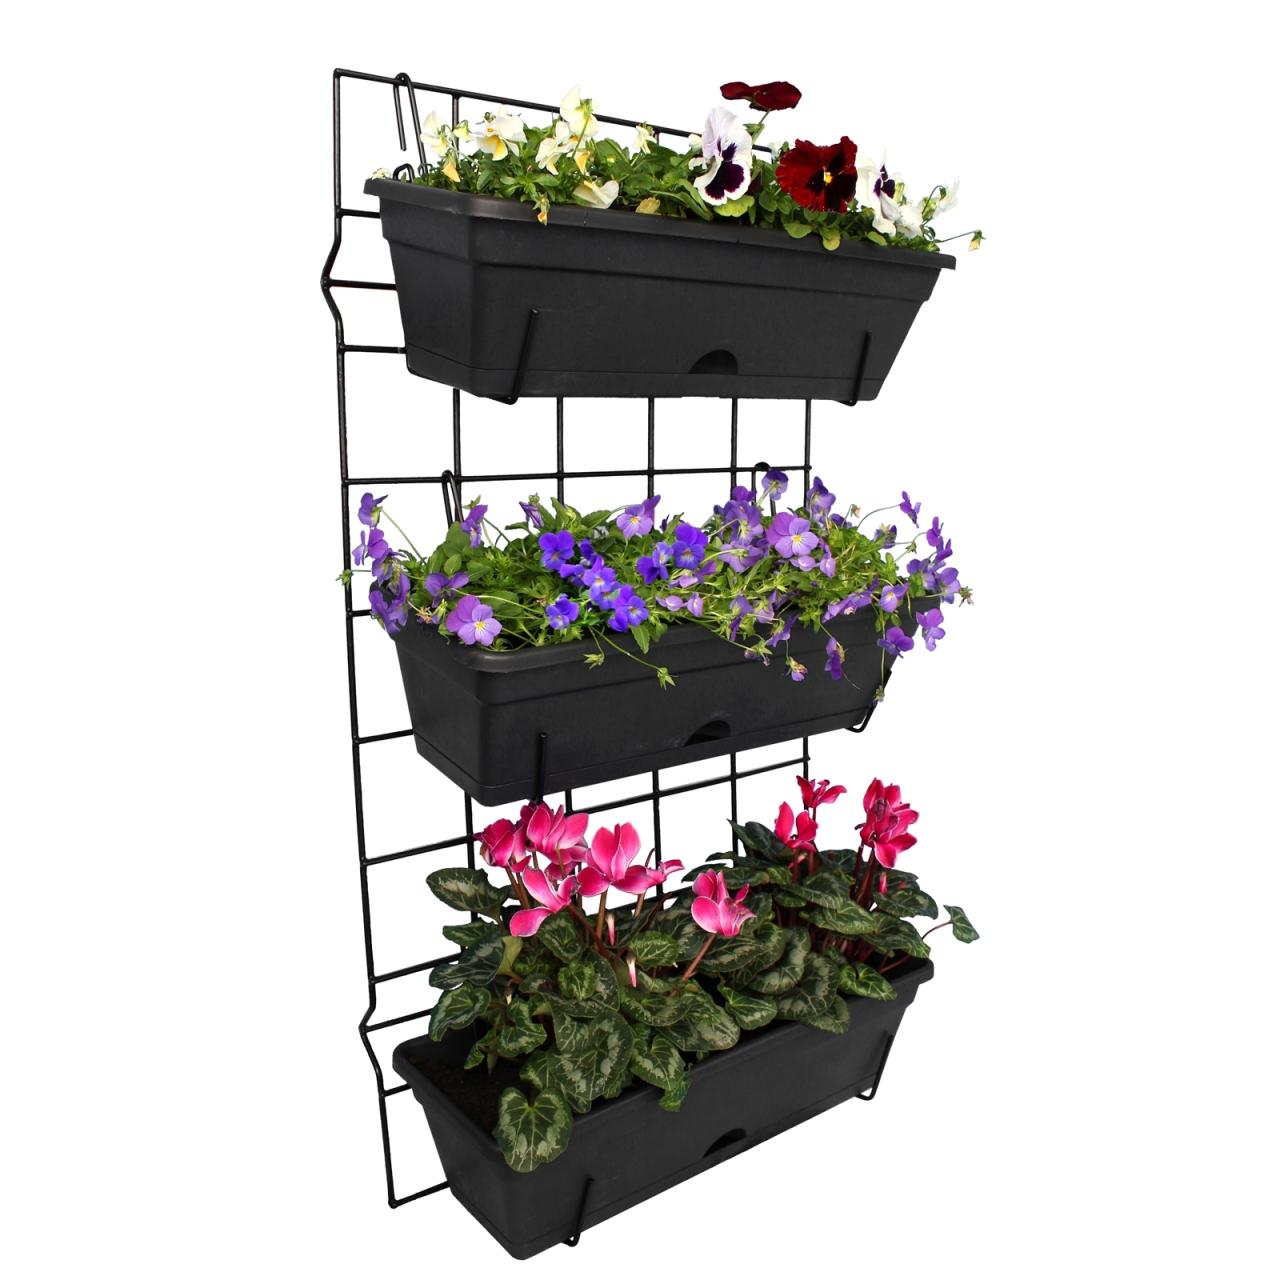 Hanging Plants Indoor | Bunnings Wall Planter: Vertical Gardening Made Easy